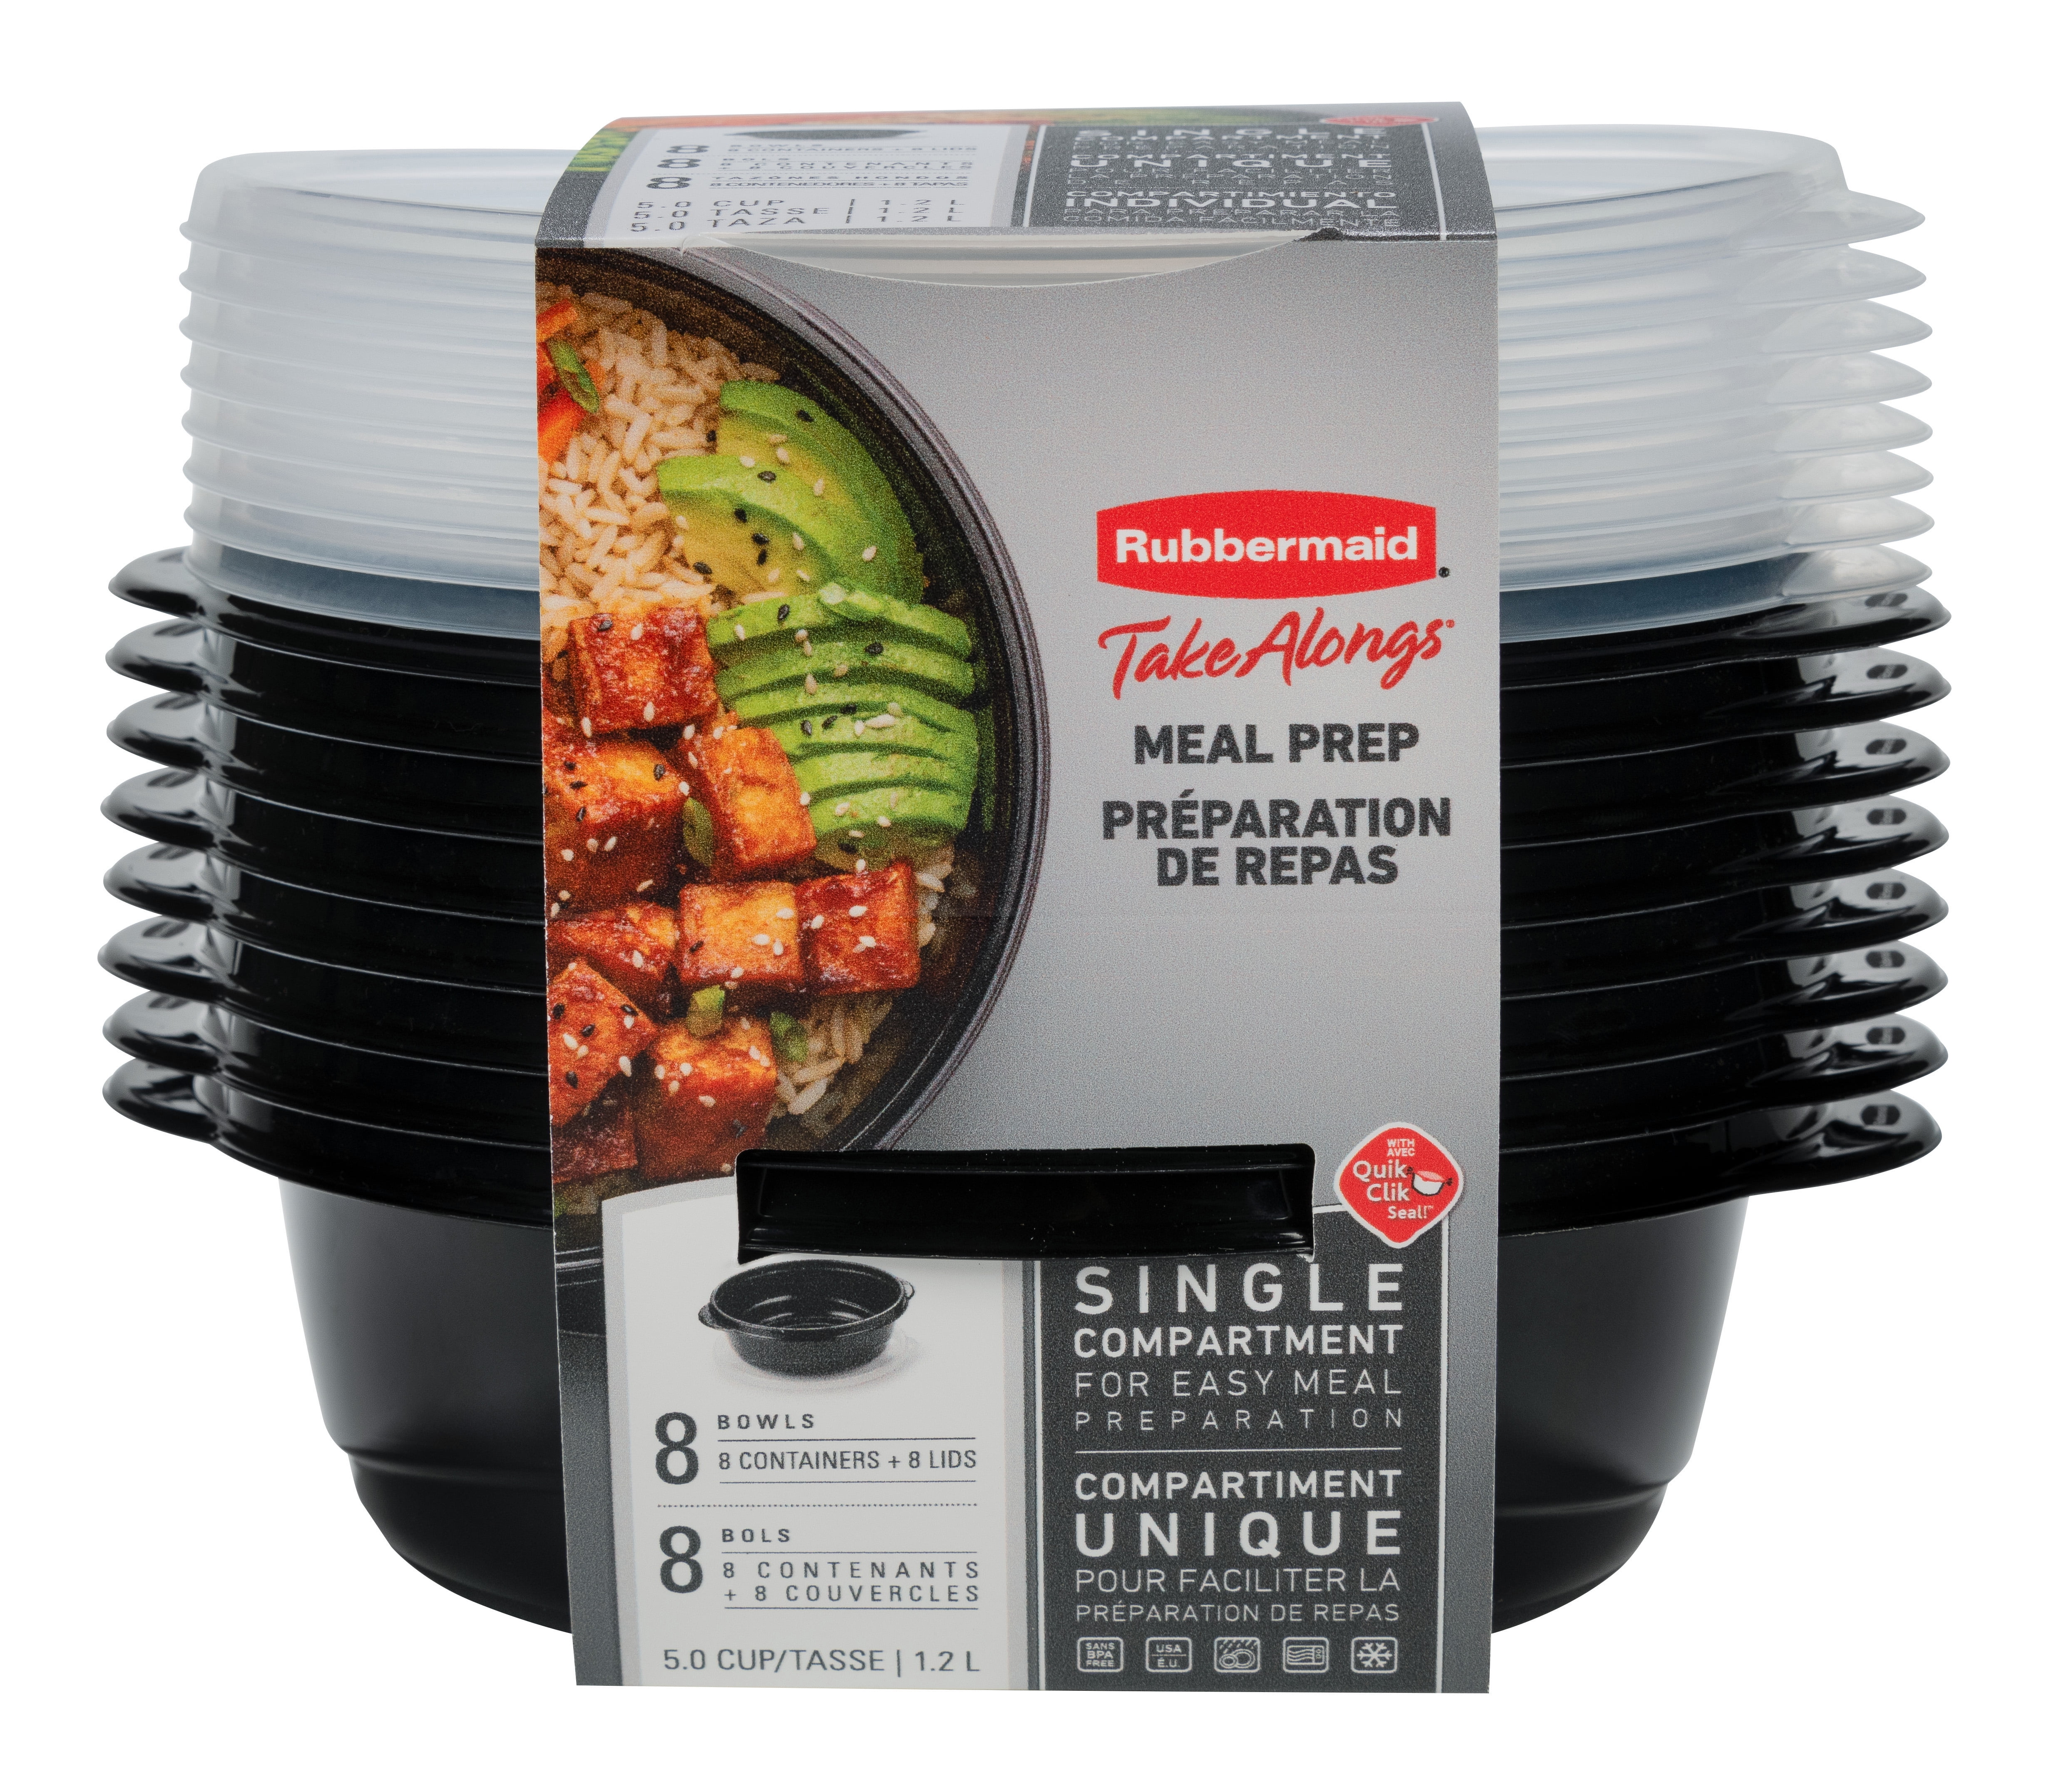 Tupperware Crystalwave 8 pc Microwave Safe Bowls Set Black Seals